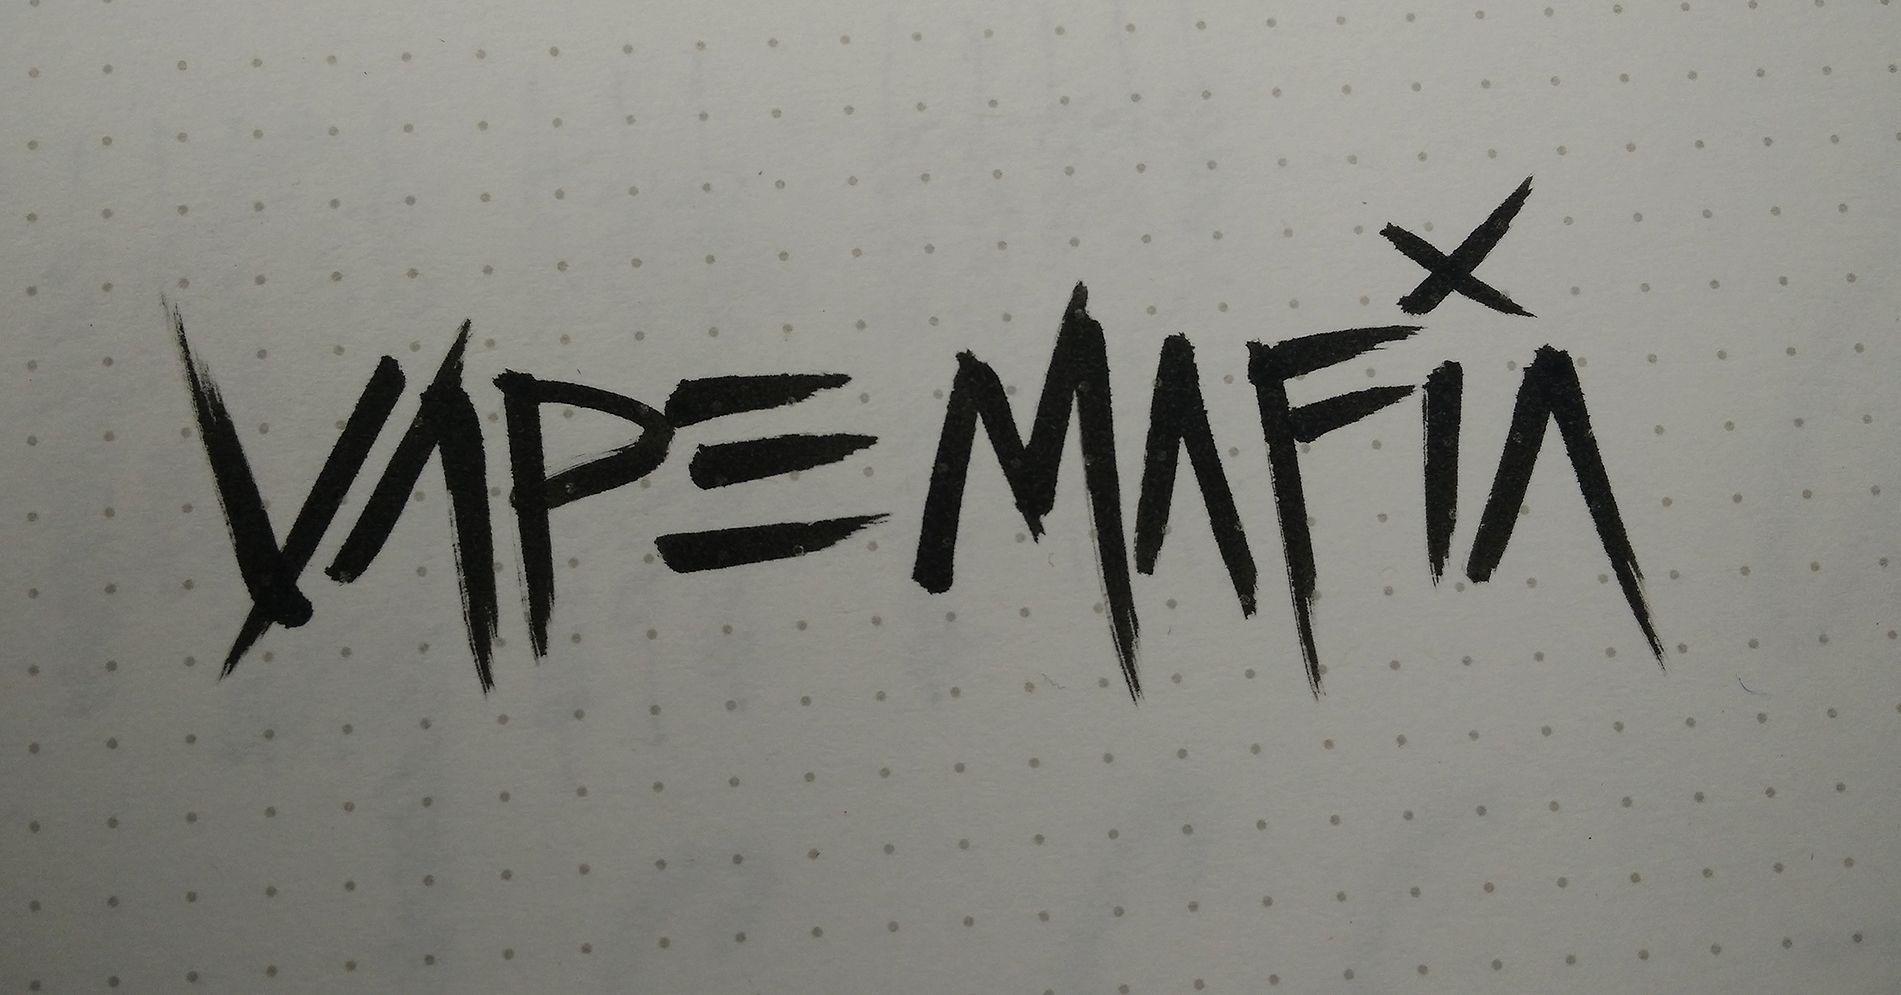 Empire / Vape Mafia Logos